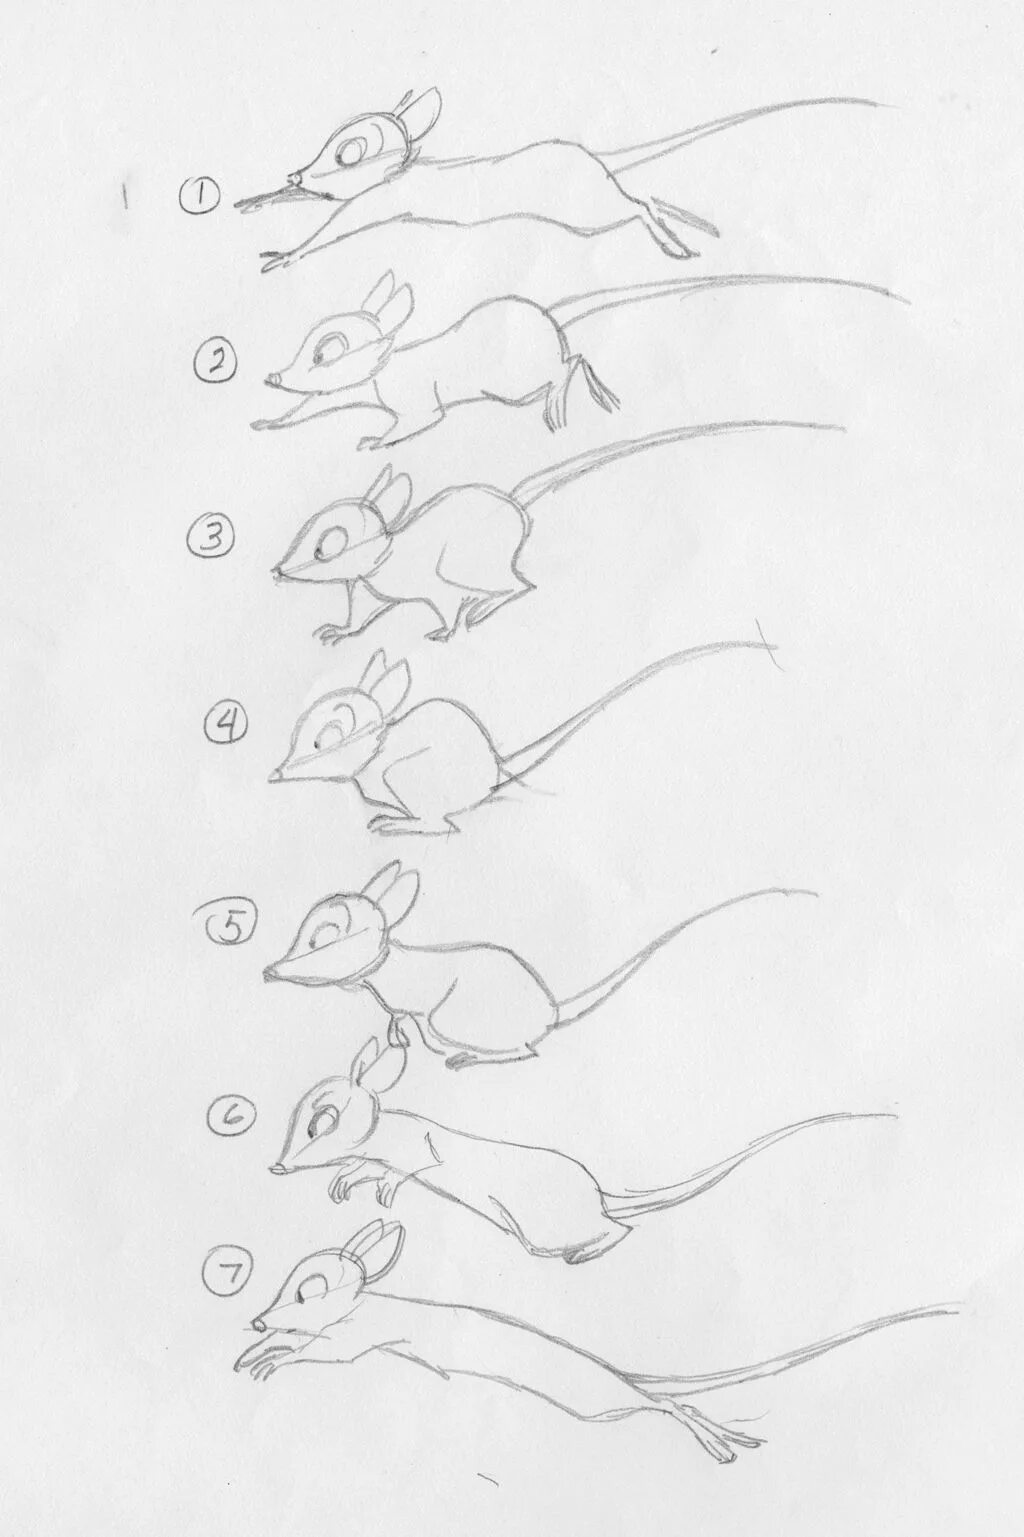 Покадровое рисование. Зарисовка по кадрам. Рисование покадровой анимации. Раскадровка мыши.